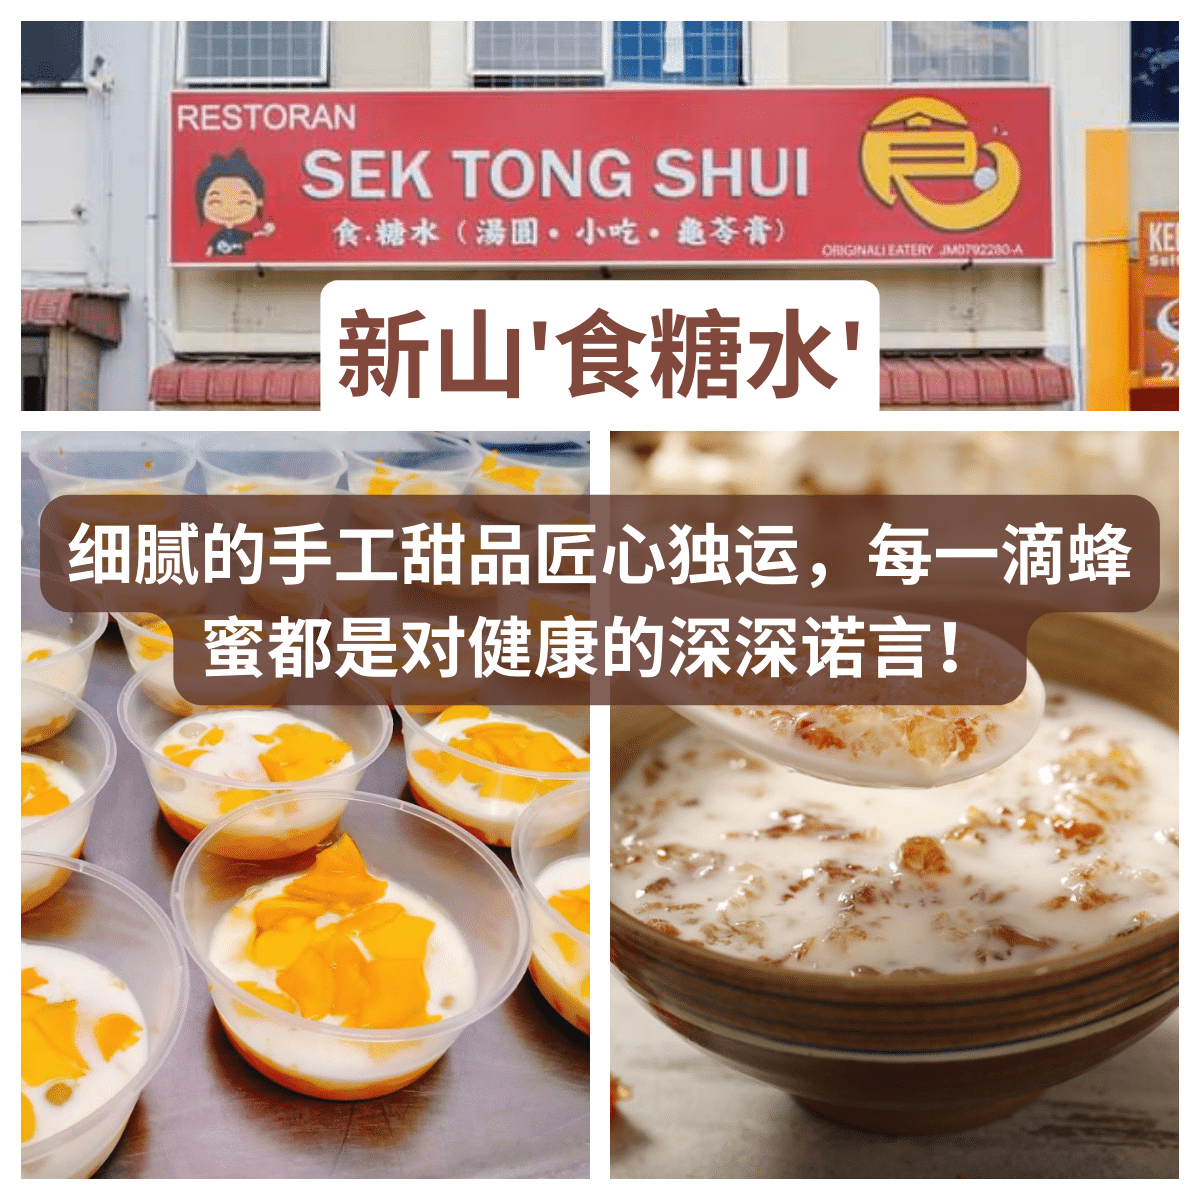 食糖水 Sek Tong Shui